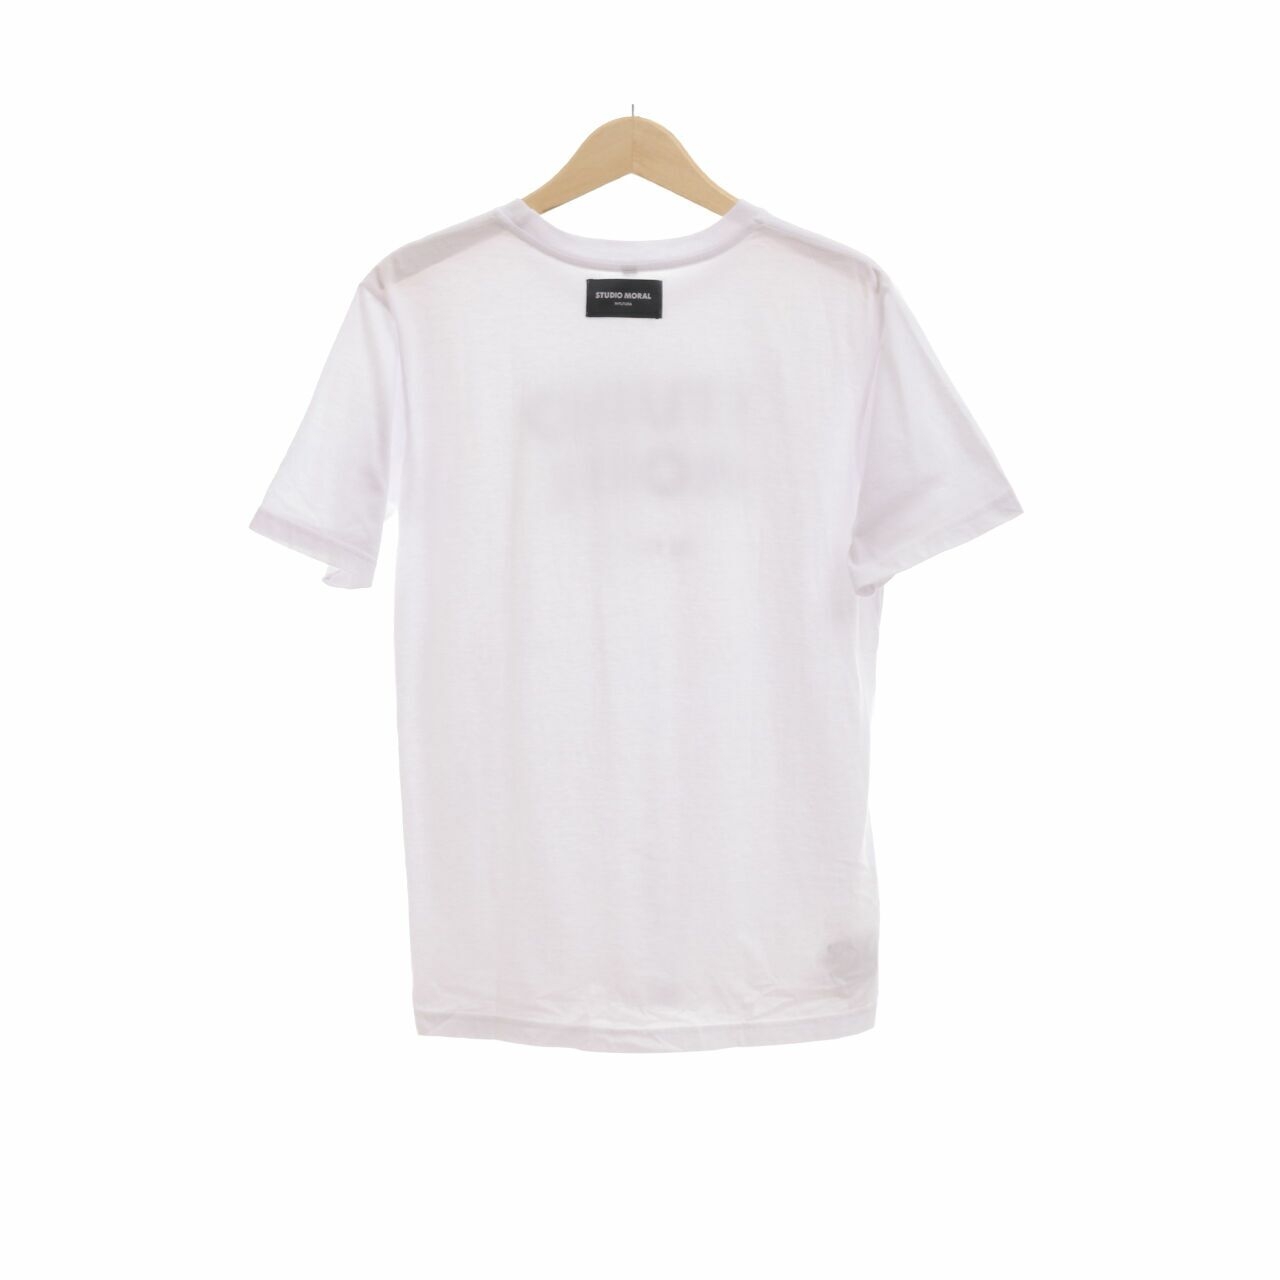 Studio Moral In Futura White T-Shirt